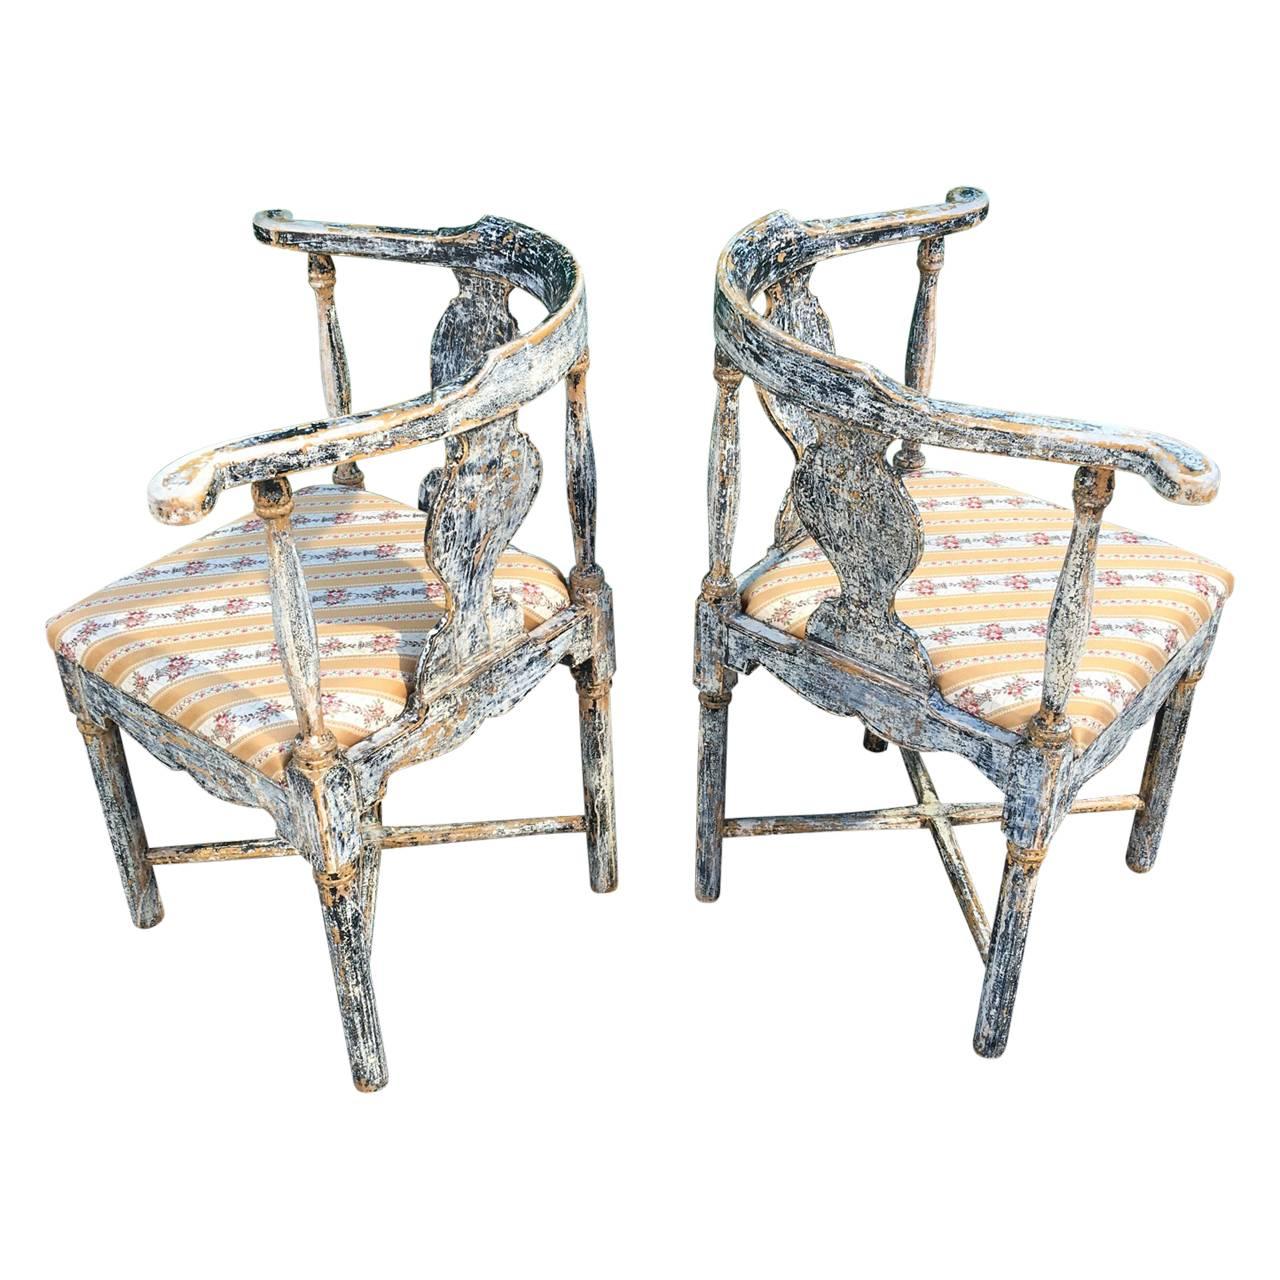 Ein Paar schwedischer Eckstühle aus den 1810er bis 1830er Jahren, die bis auf die ursprüngliche schwarze Farbe abgeschabt wurden. Die Sitze sind lose und können leicht neu gepolstert werden.
